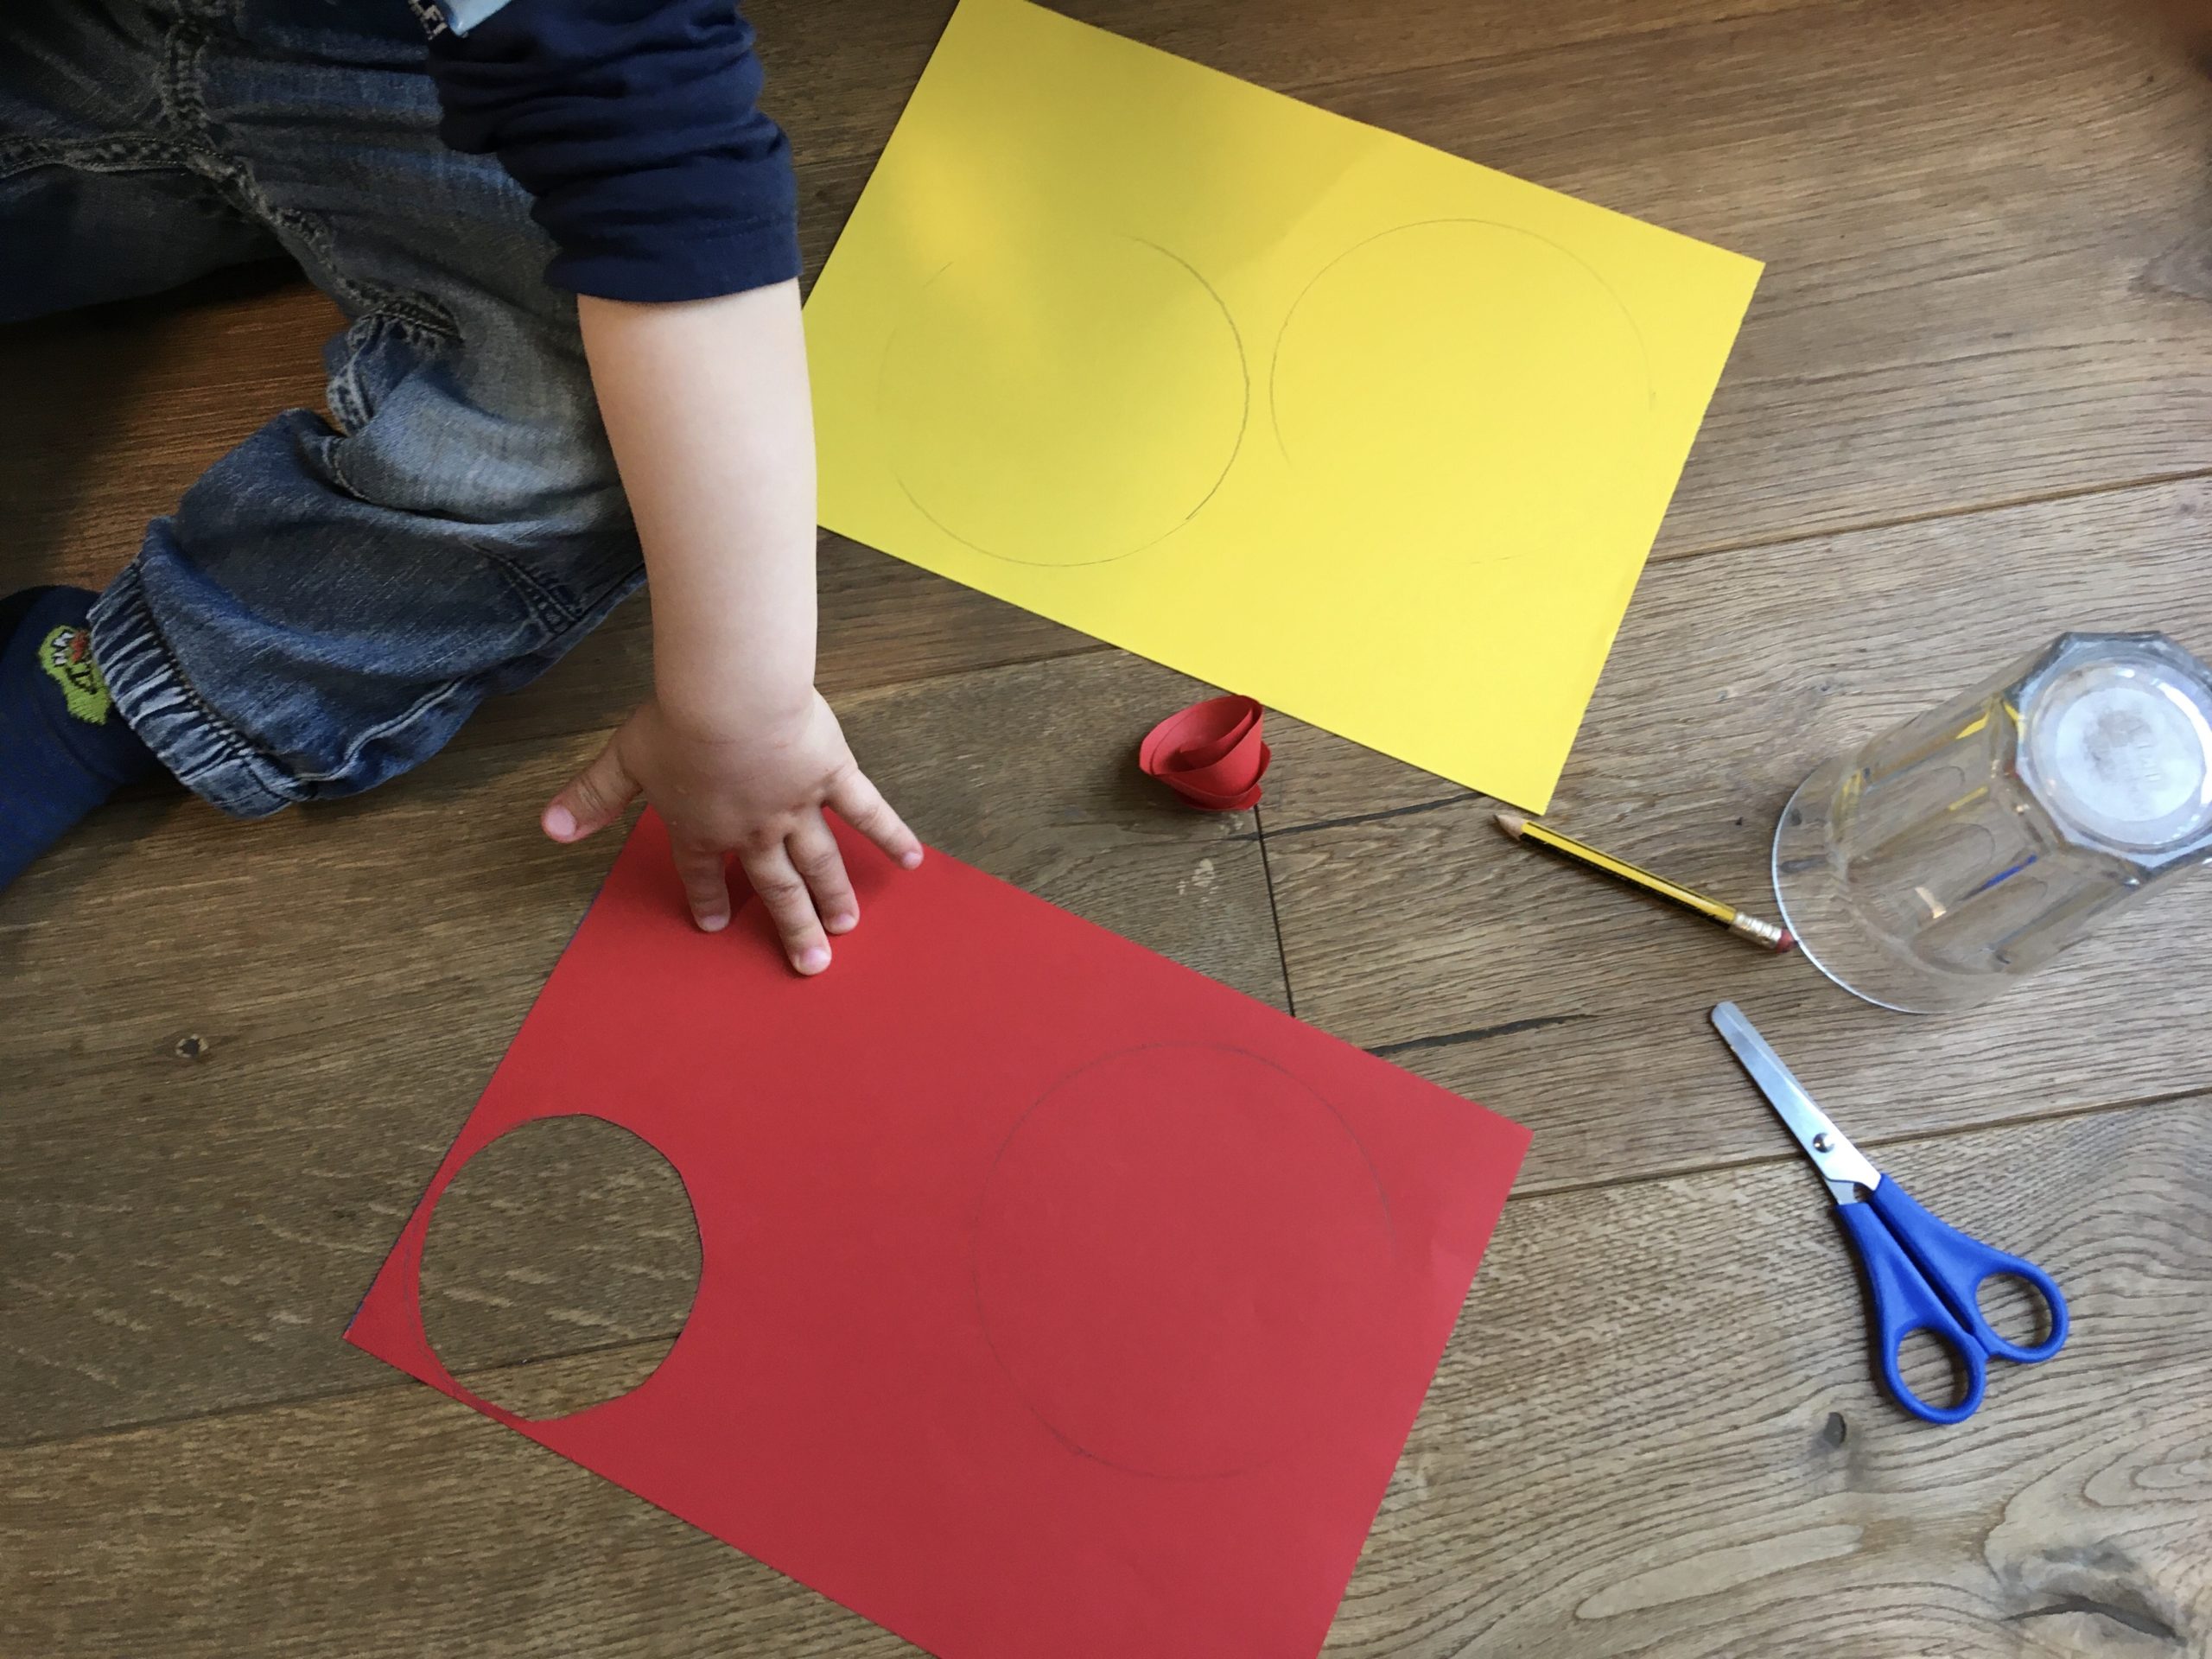 Bild zum Schritt 1 für das Bastel- und DIY-Abenteuer für Kinder: 'Material zusammensuchen.'